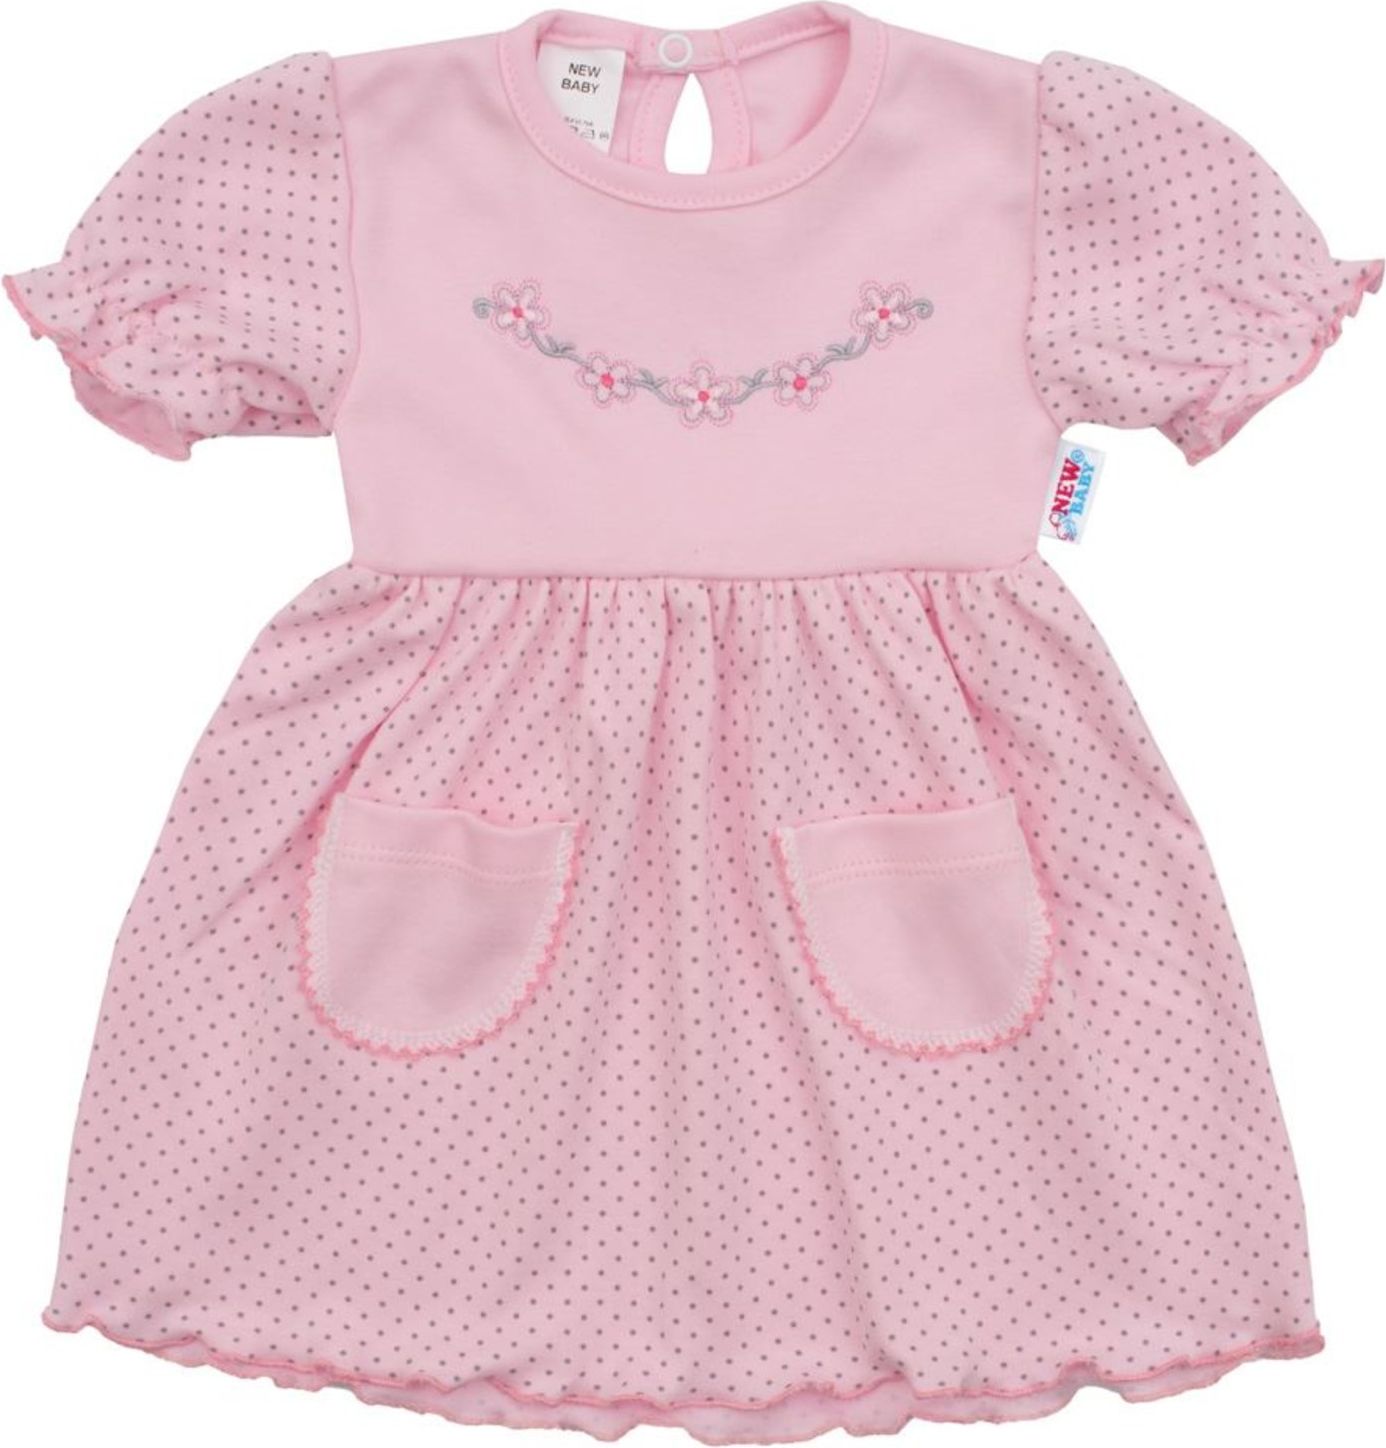 Kojenecké šatičky s krátkým rukávem New Baby Summer dress - Kojenecké šatičky s krátkým rukávem New Baby Summer dress - obrázek 1